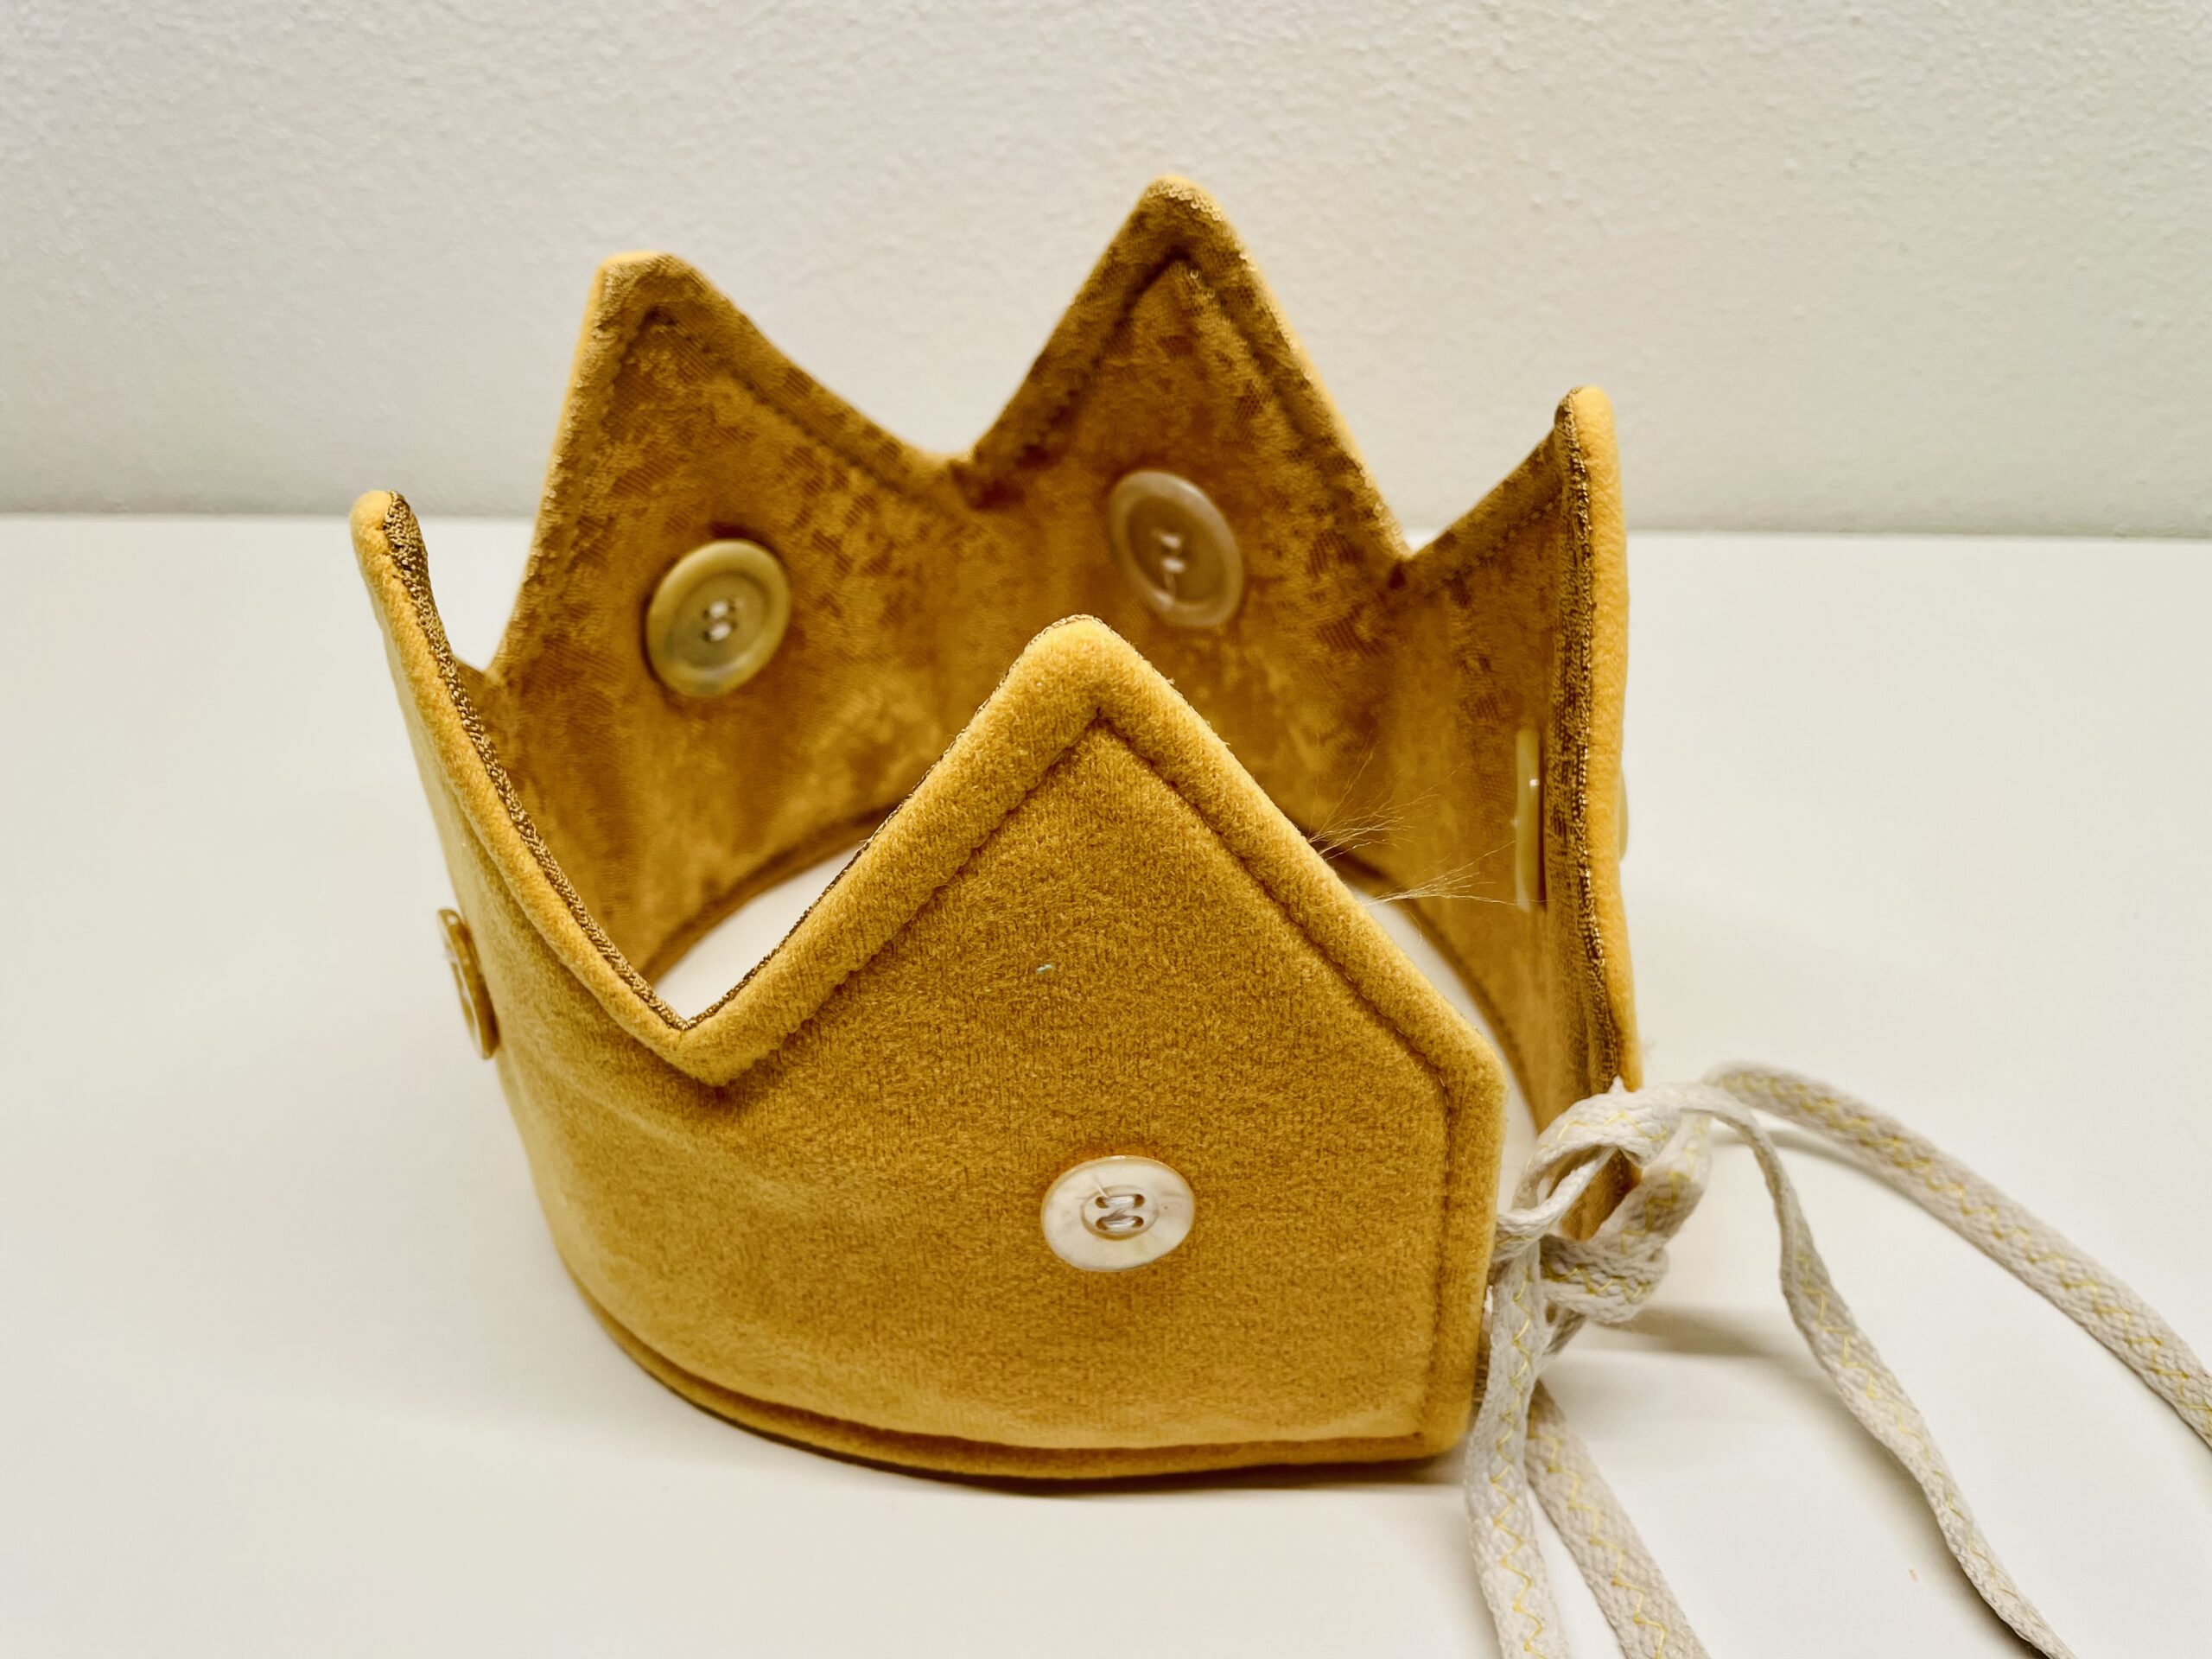 Bild zum Schritt 61 für das Bastel- und DIY-Abenteuer für Kinder: 'Mit den Bändern könnt ihr die Krone zusammenbinden und aufsetzen.'